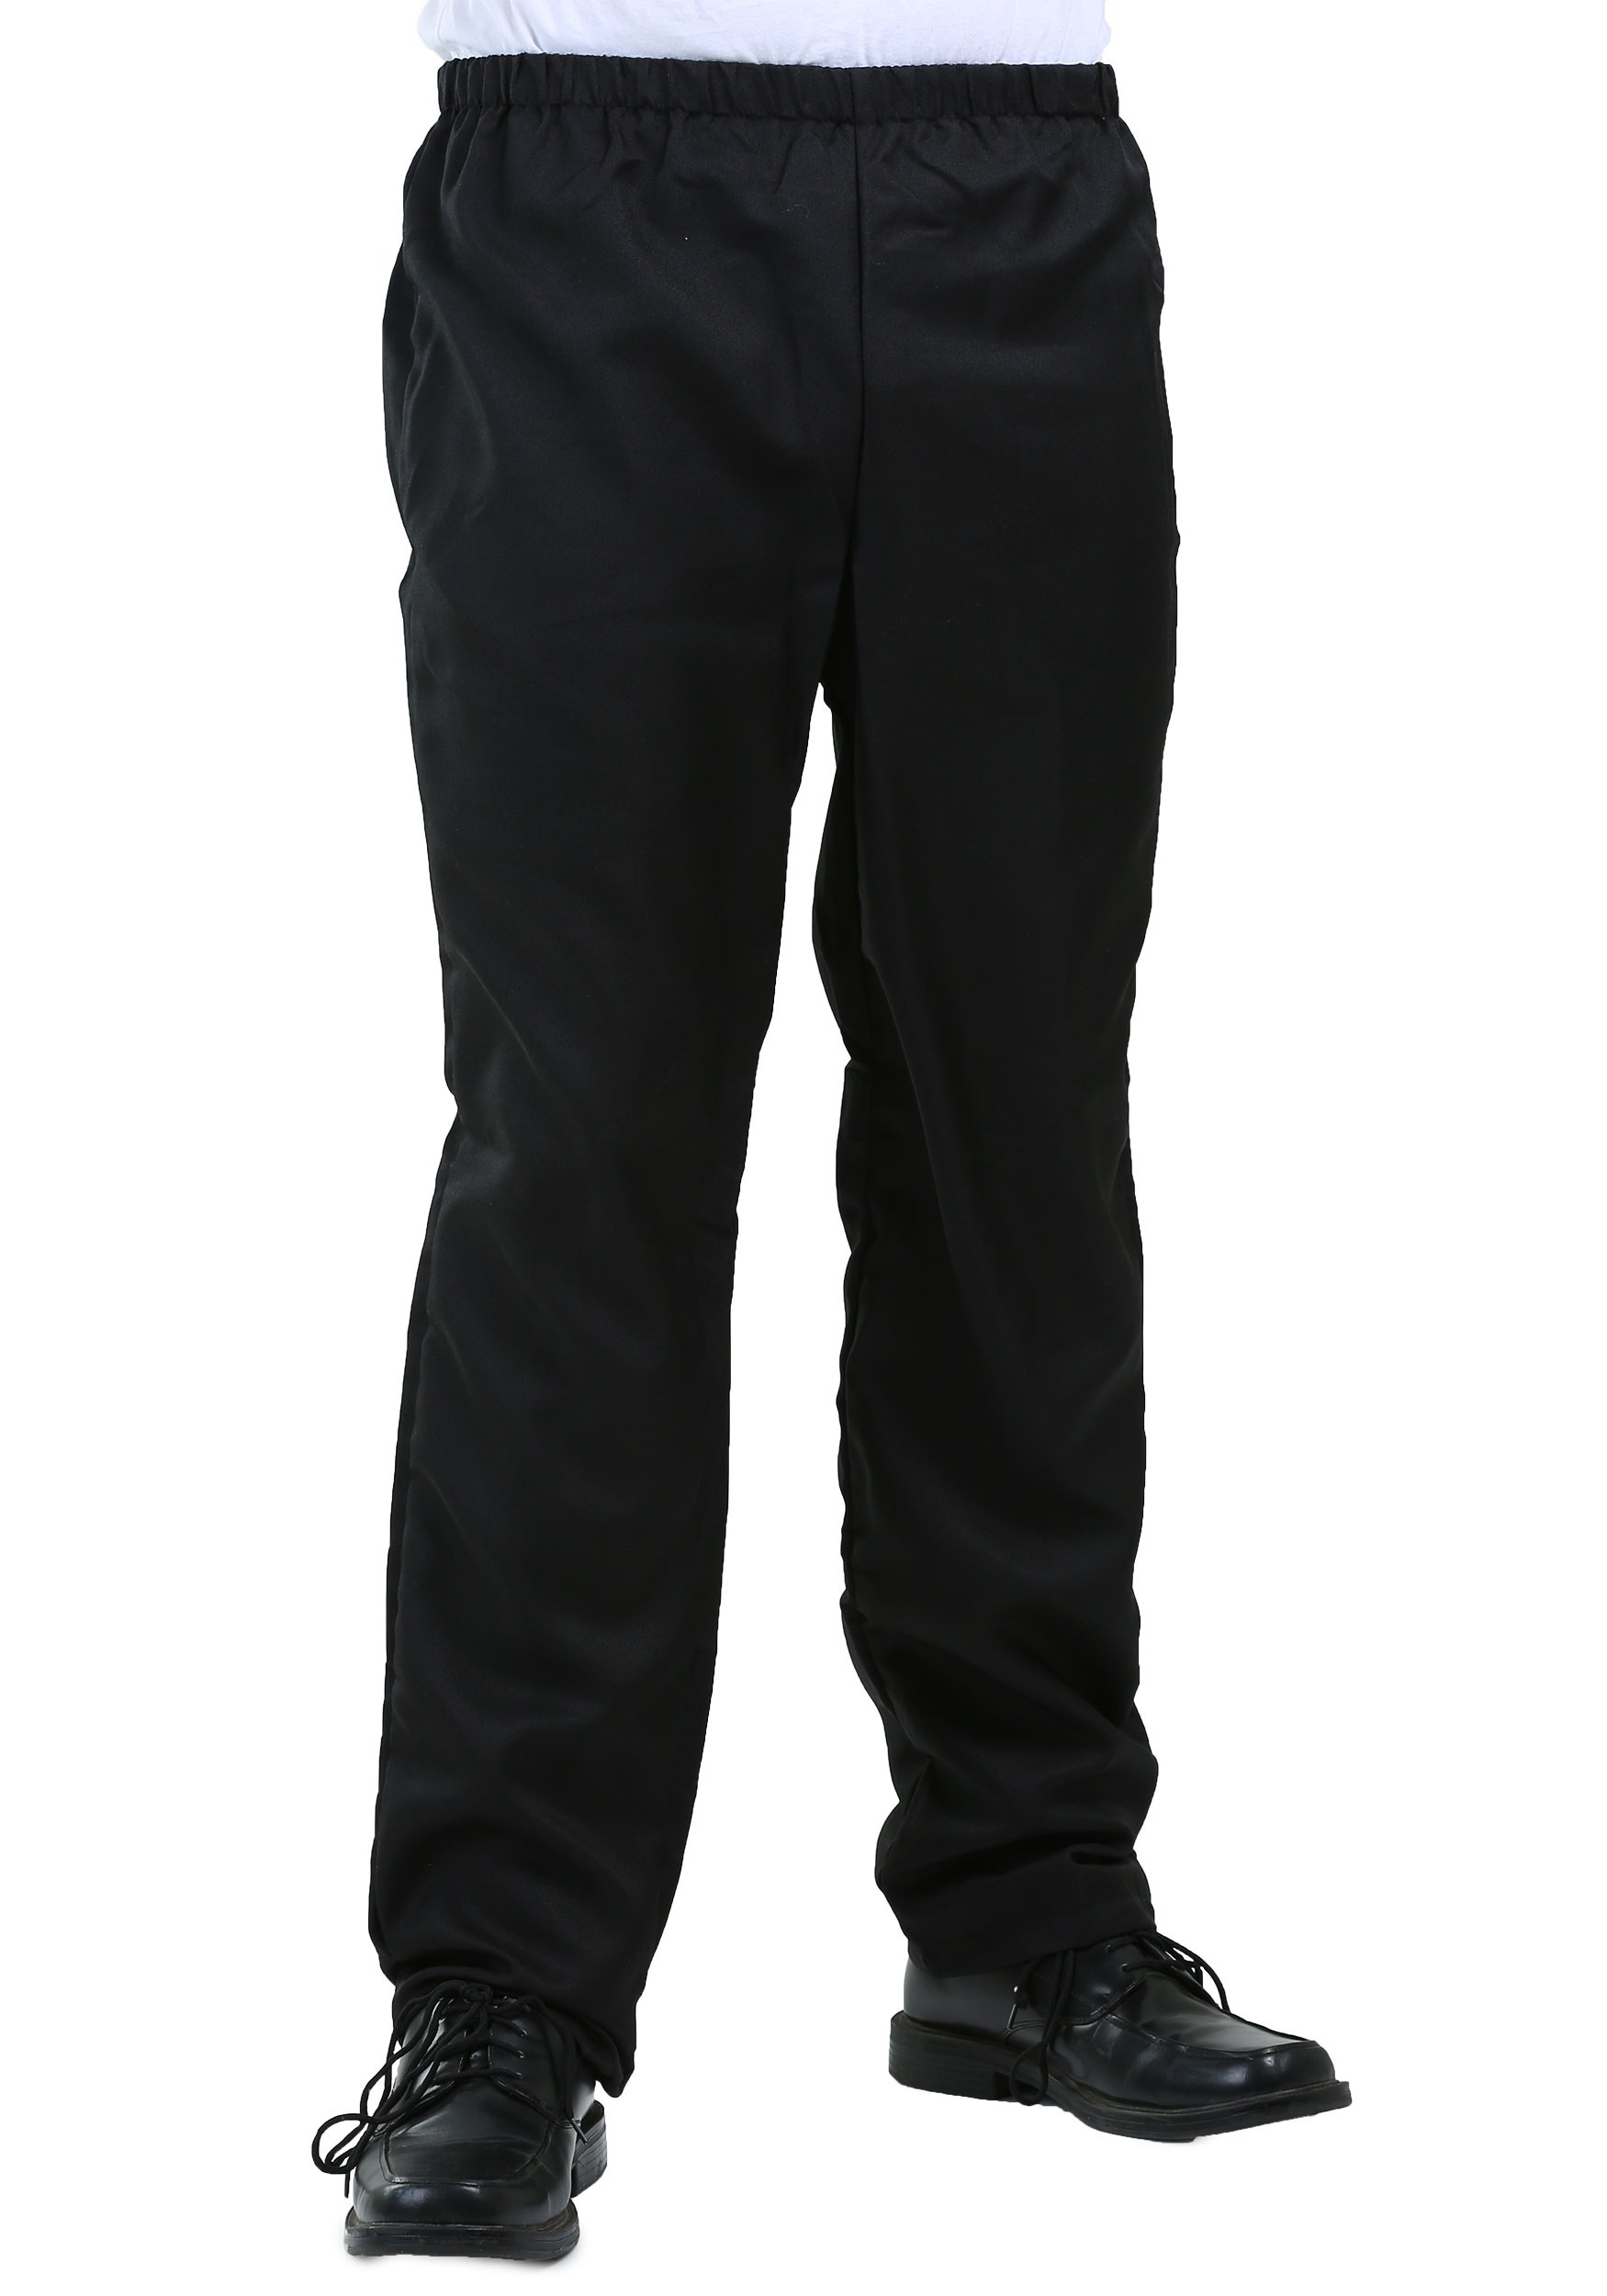 Men's Amish Pants 34 x 23 Halloween Black Button Flap pants Costume Plain  E2